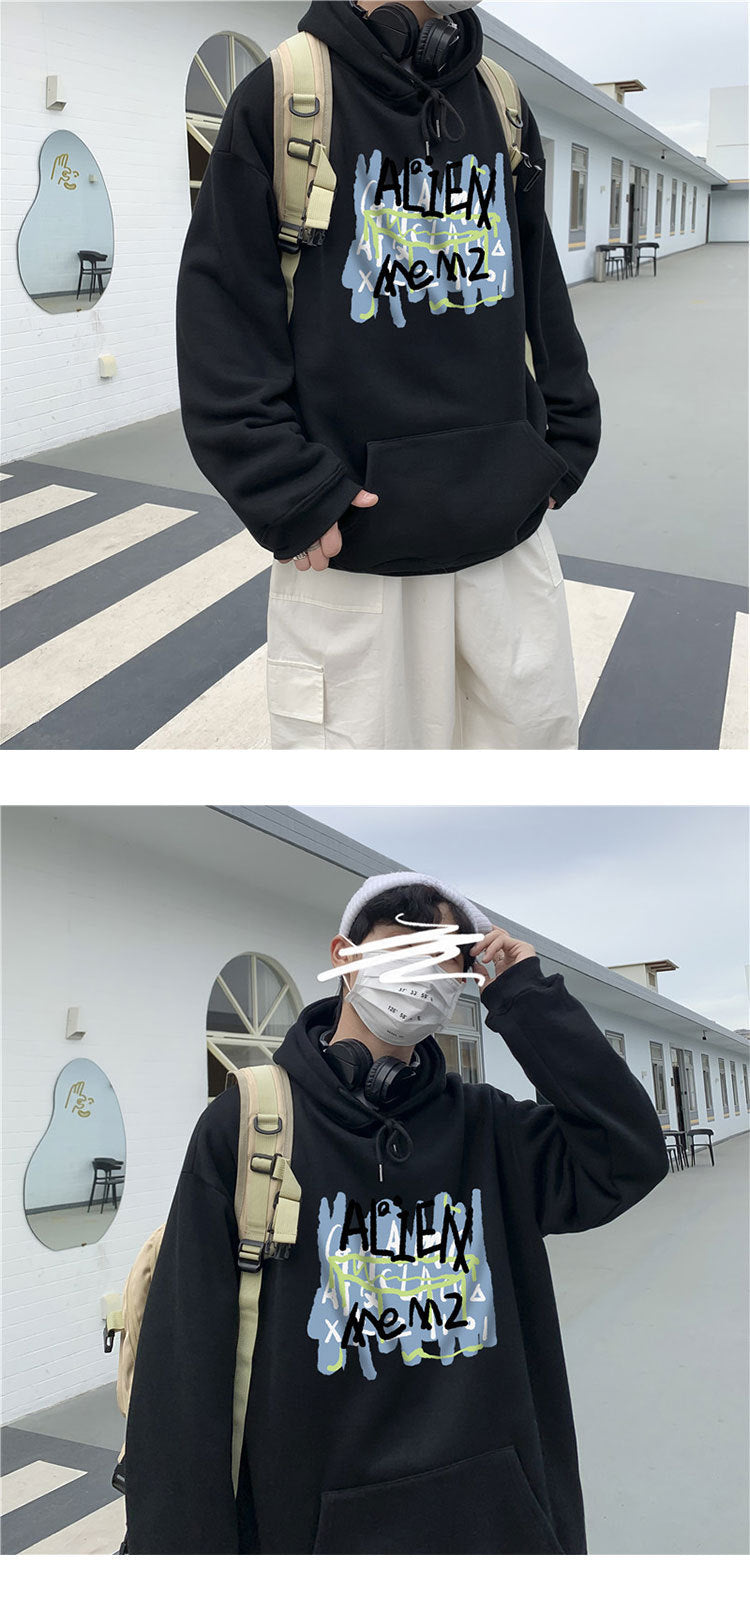 メンズ パーカー アルファベットプルオーバー長袖カジュアル学園風韓国系キャンパスフード付きパーカー